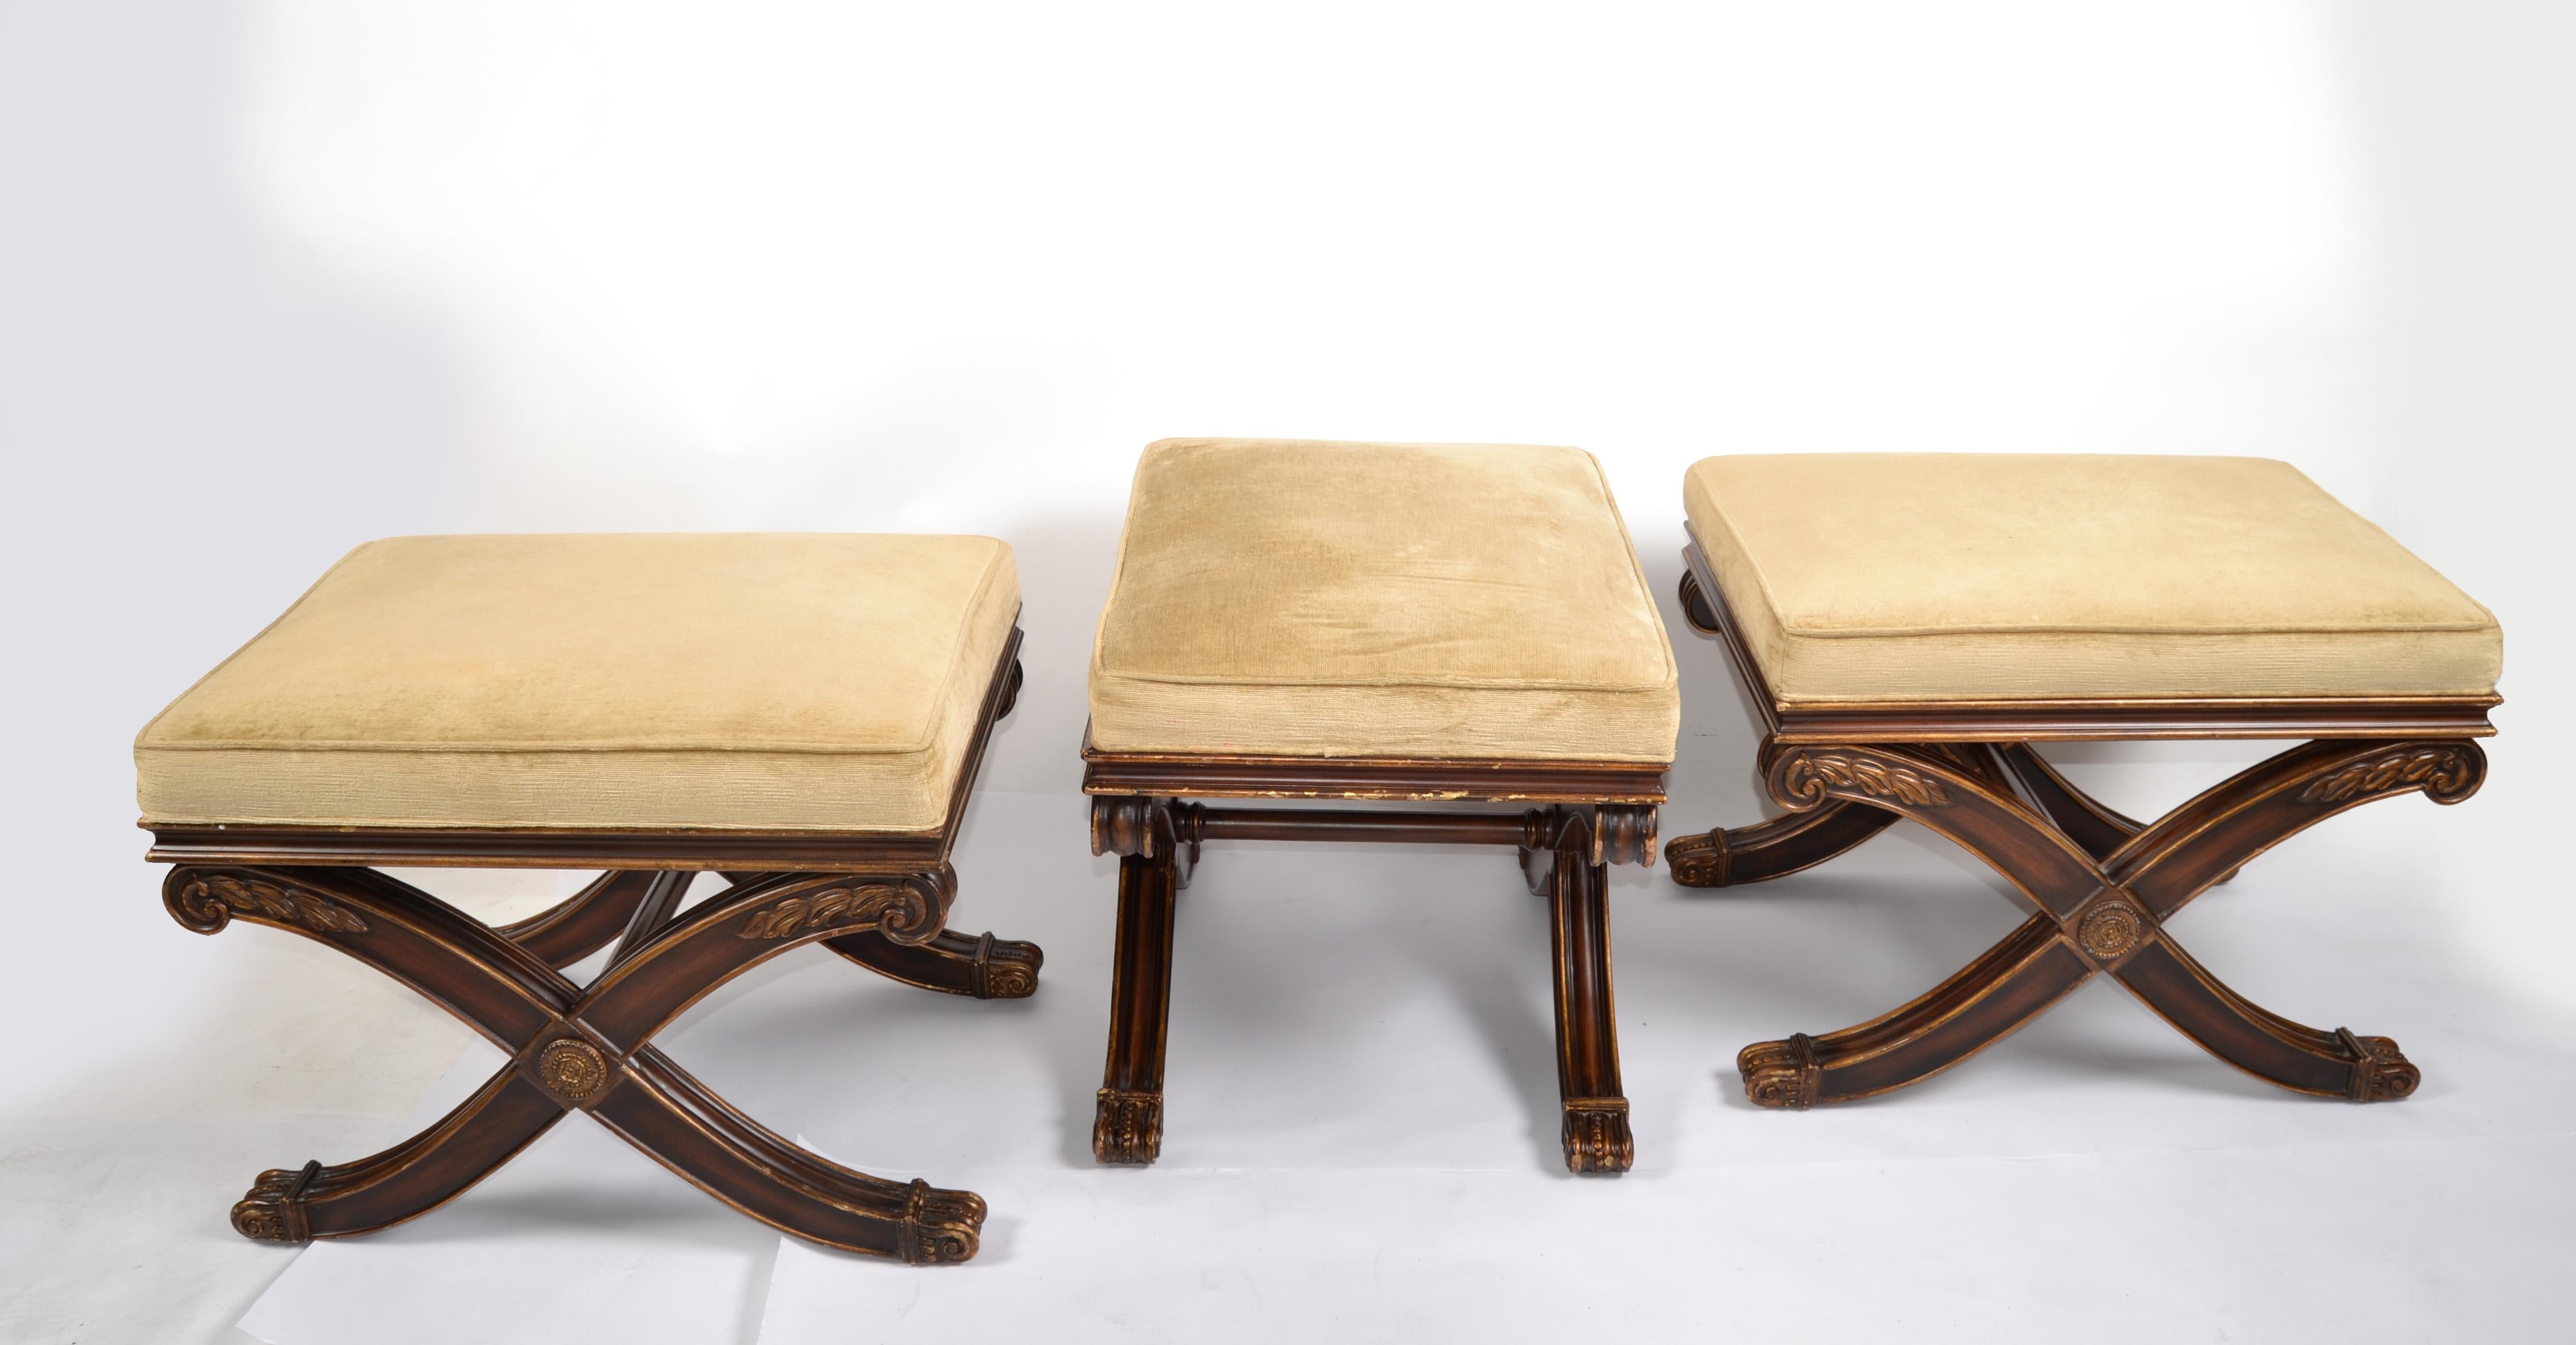 Trois magnifiques bancs, tabourets ou ottomans de style néoclassique français Hollywood Regency avec une base en X.
Les sièges rembourrés sont en tissu de corde moutarde et ont fière allure. La base présente des reflets dorés et des appliques en